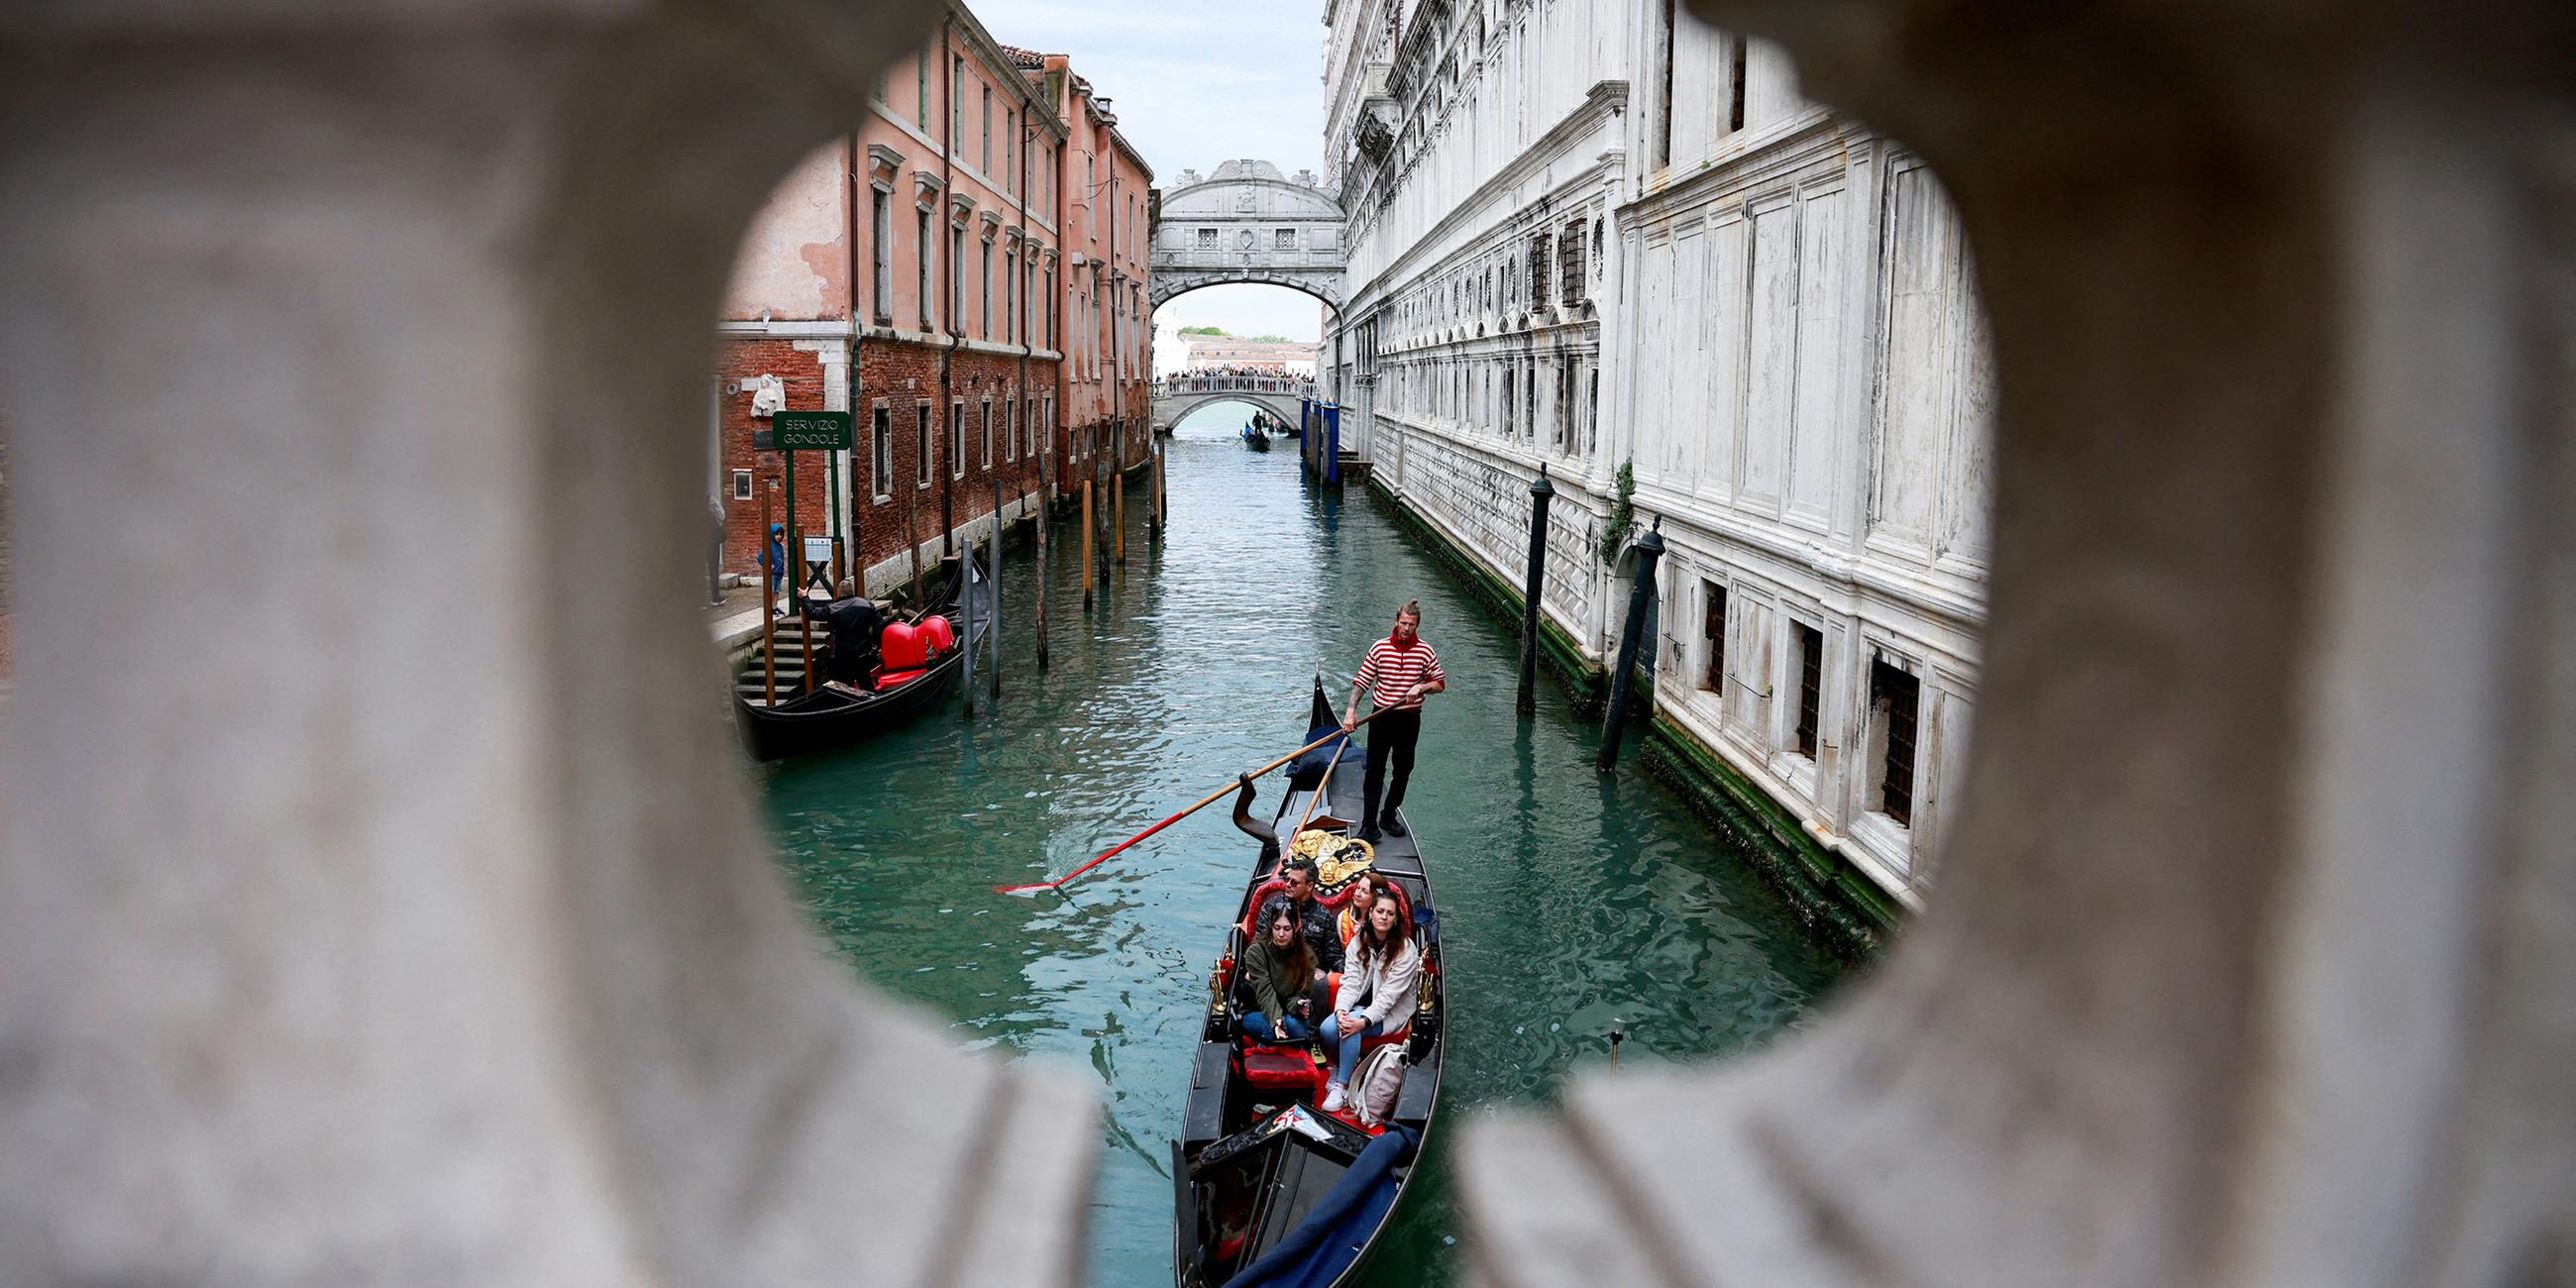 Ein Gondoliere rudert seine Gondel durch den Kanal von Venedig